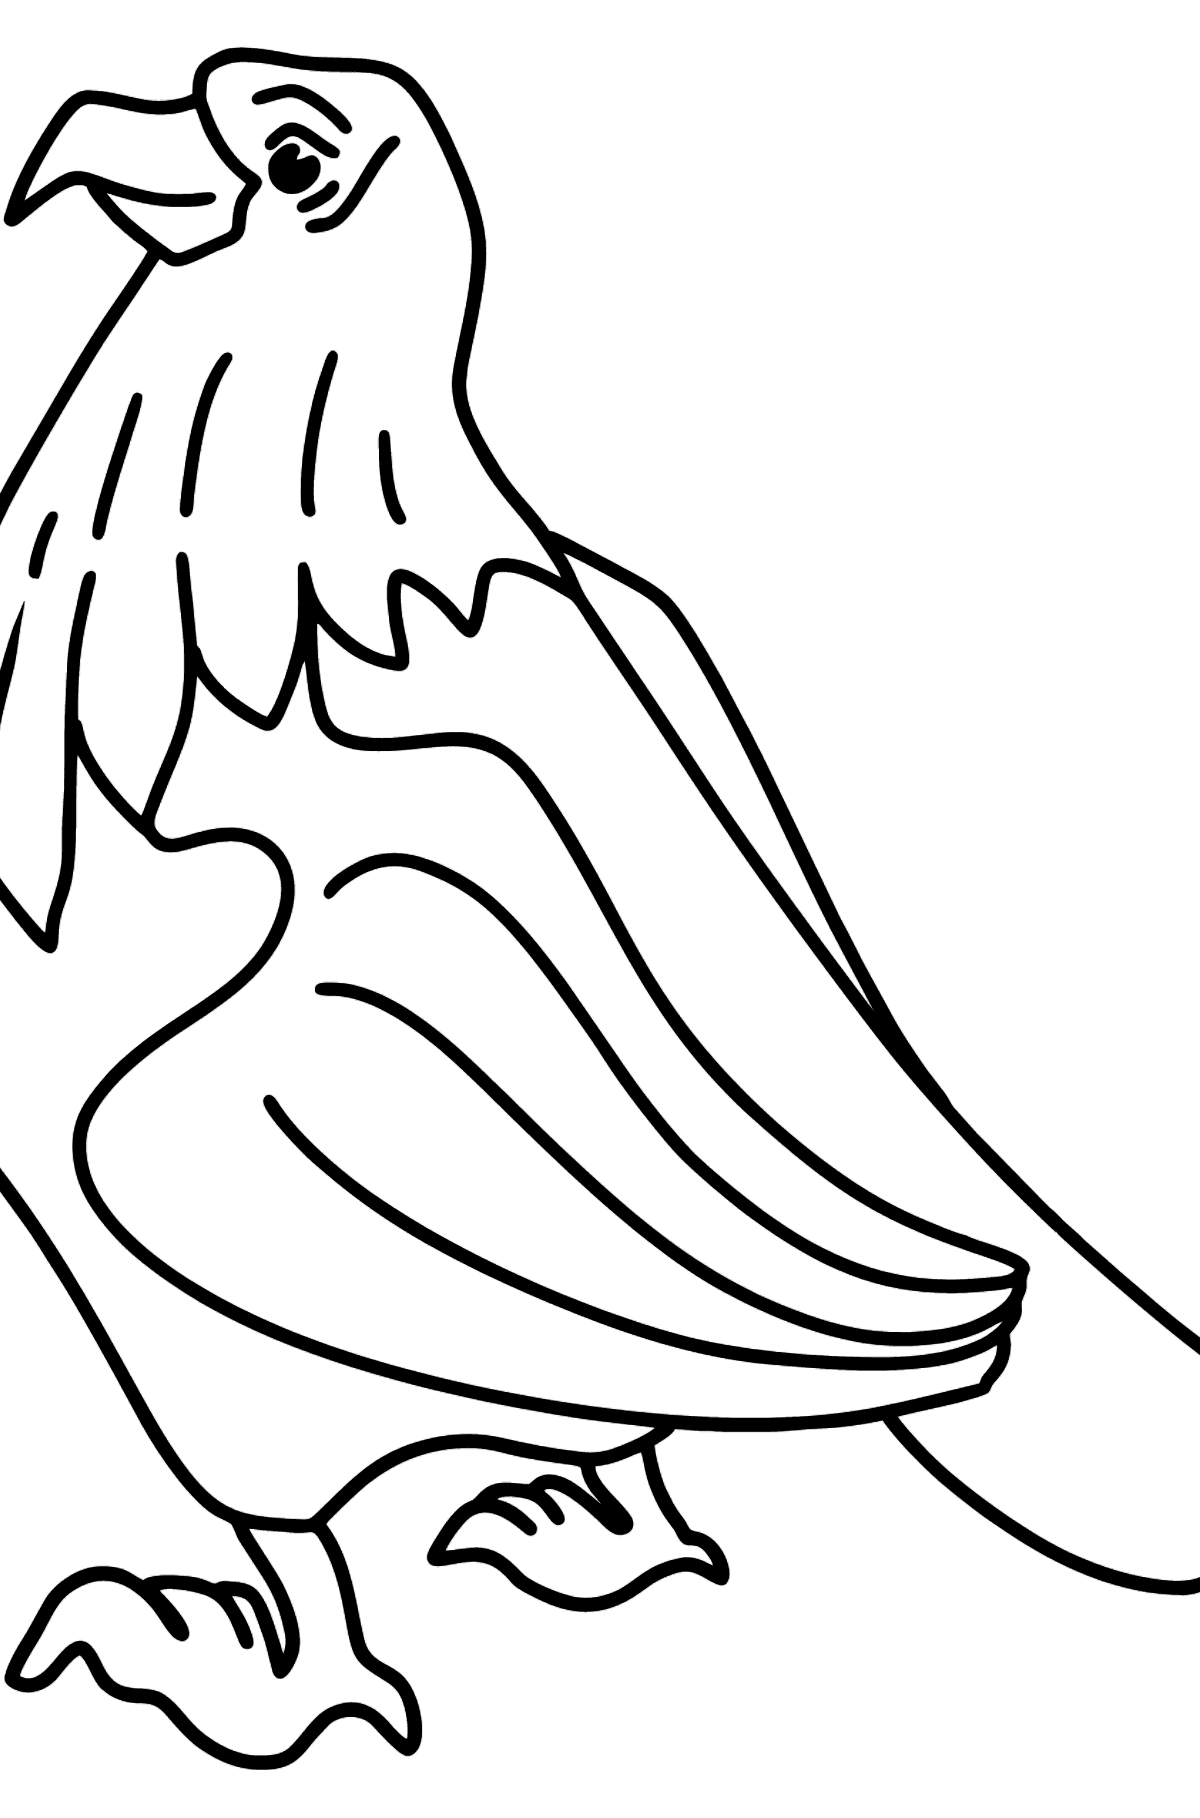 Desenho para colorir de um Falcão - Imagens para Colorir para Crianças